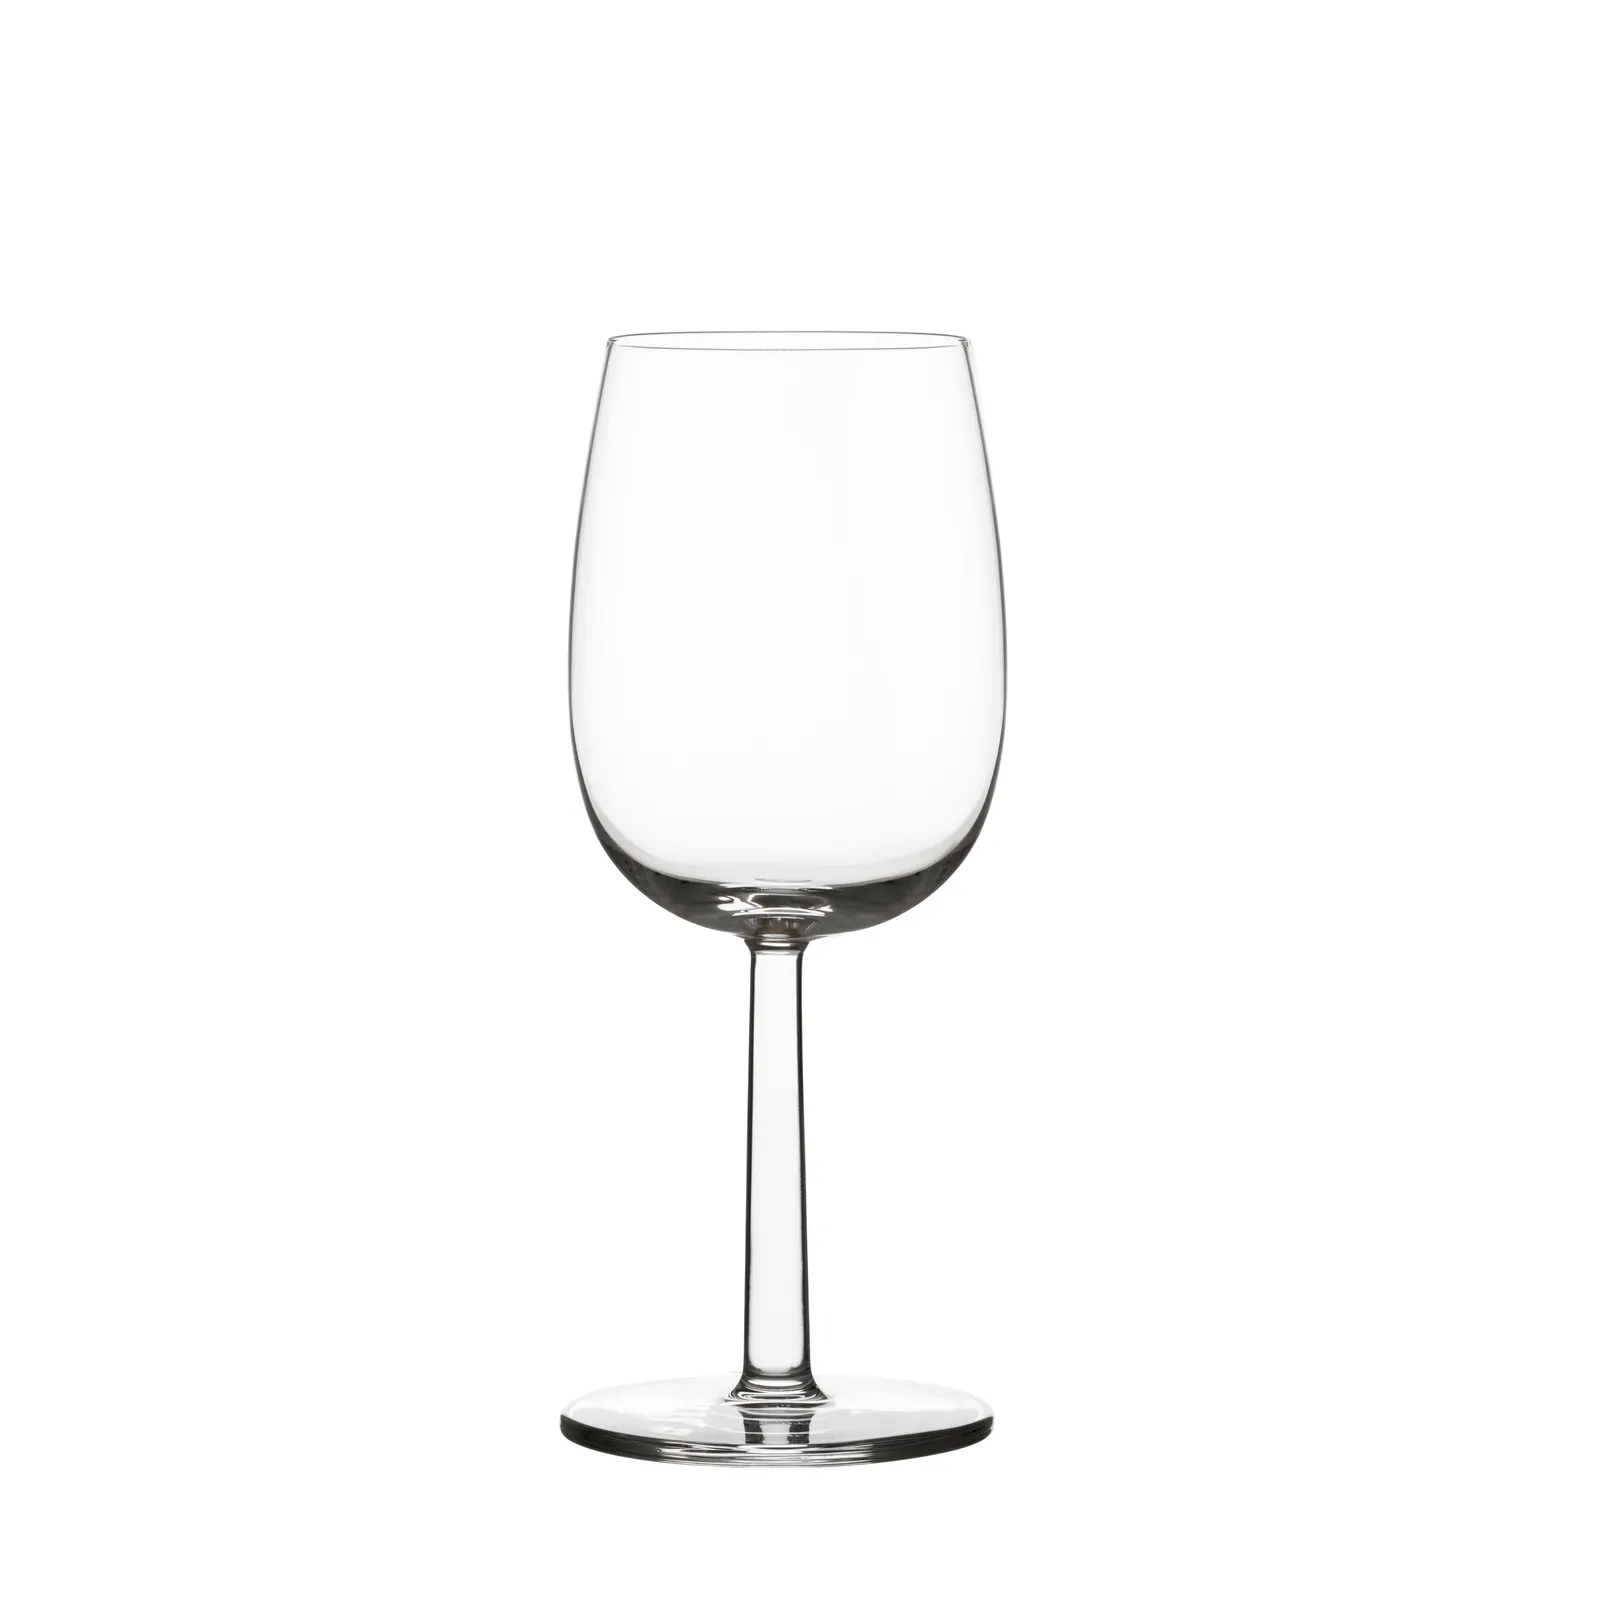 Raami white wine glass Iittala 28 cl